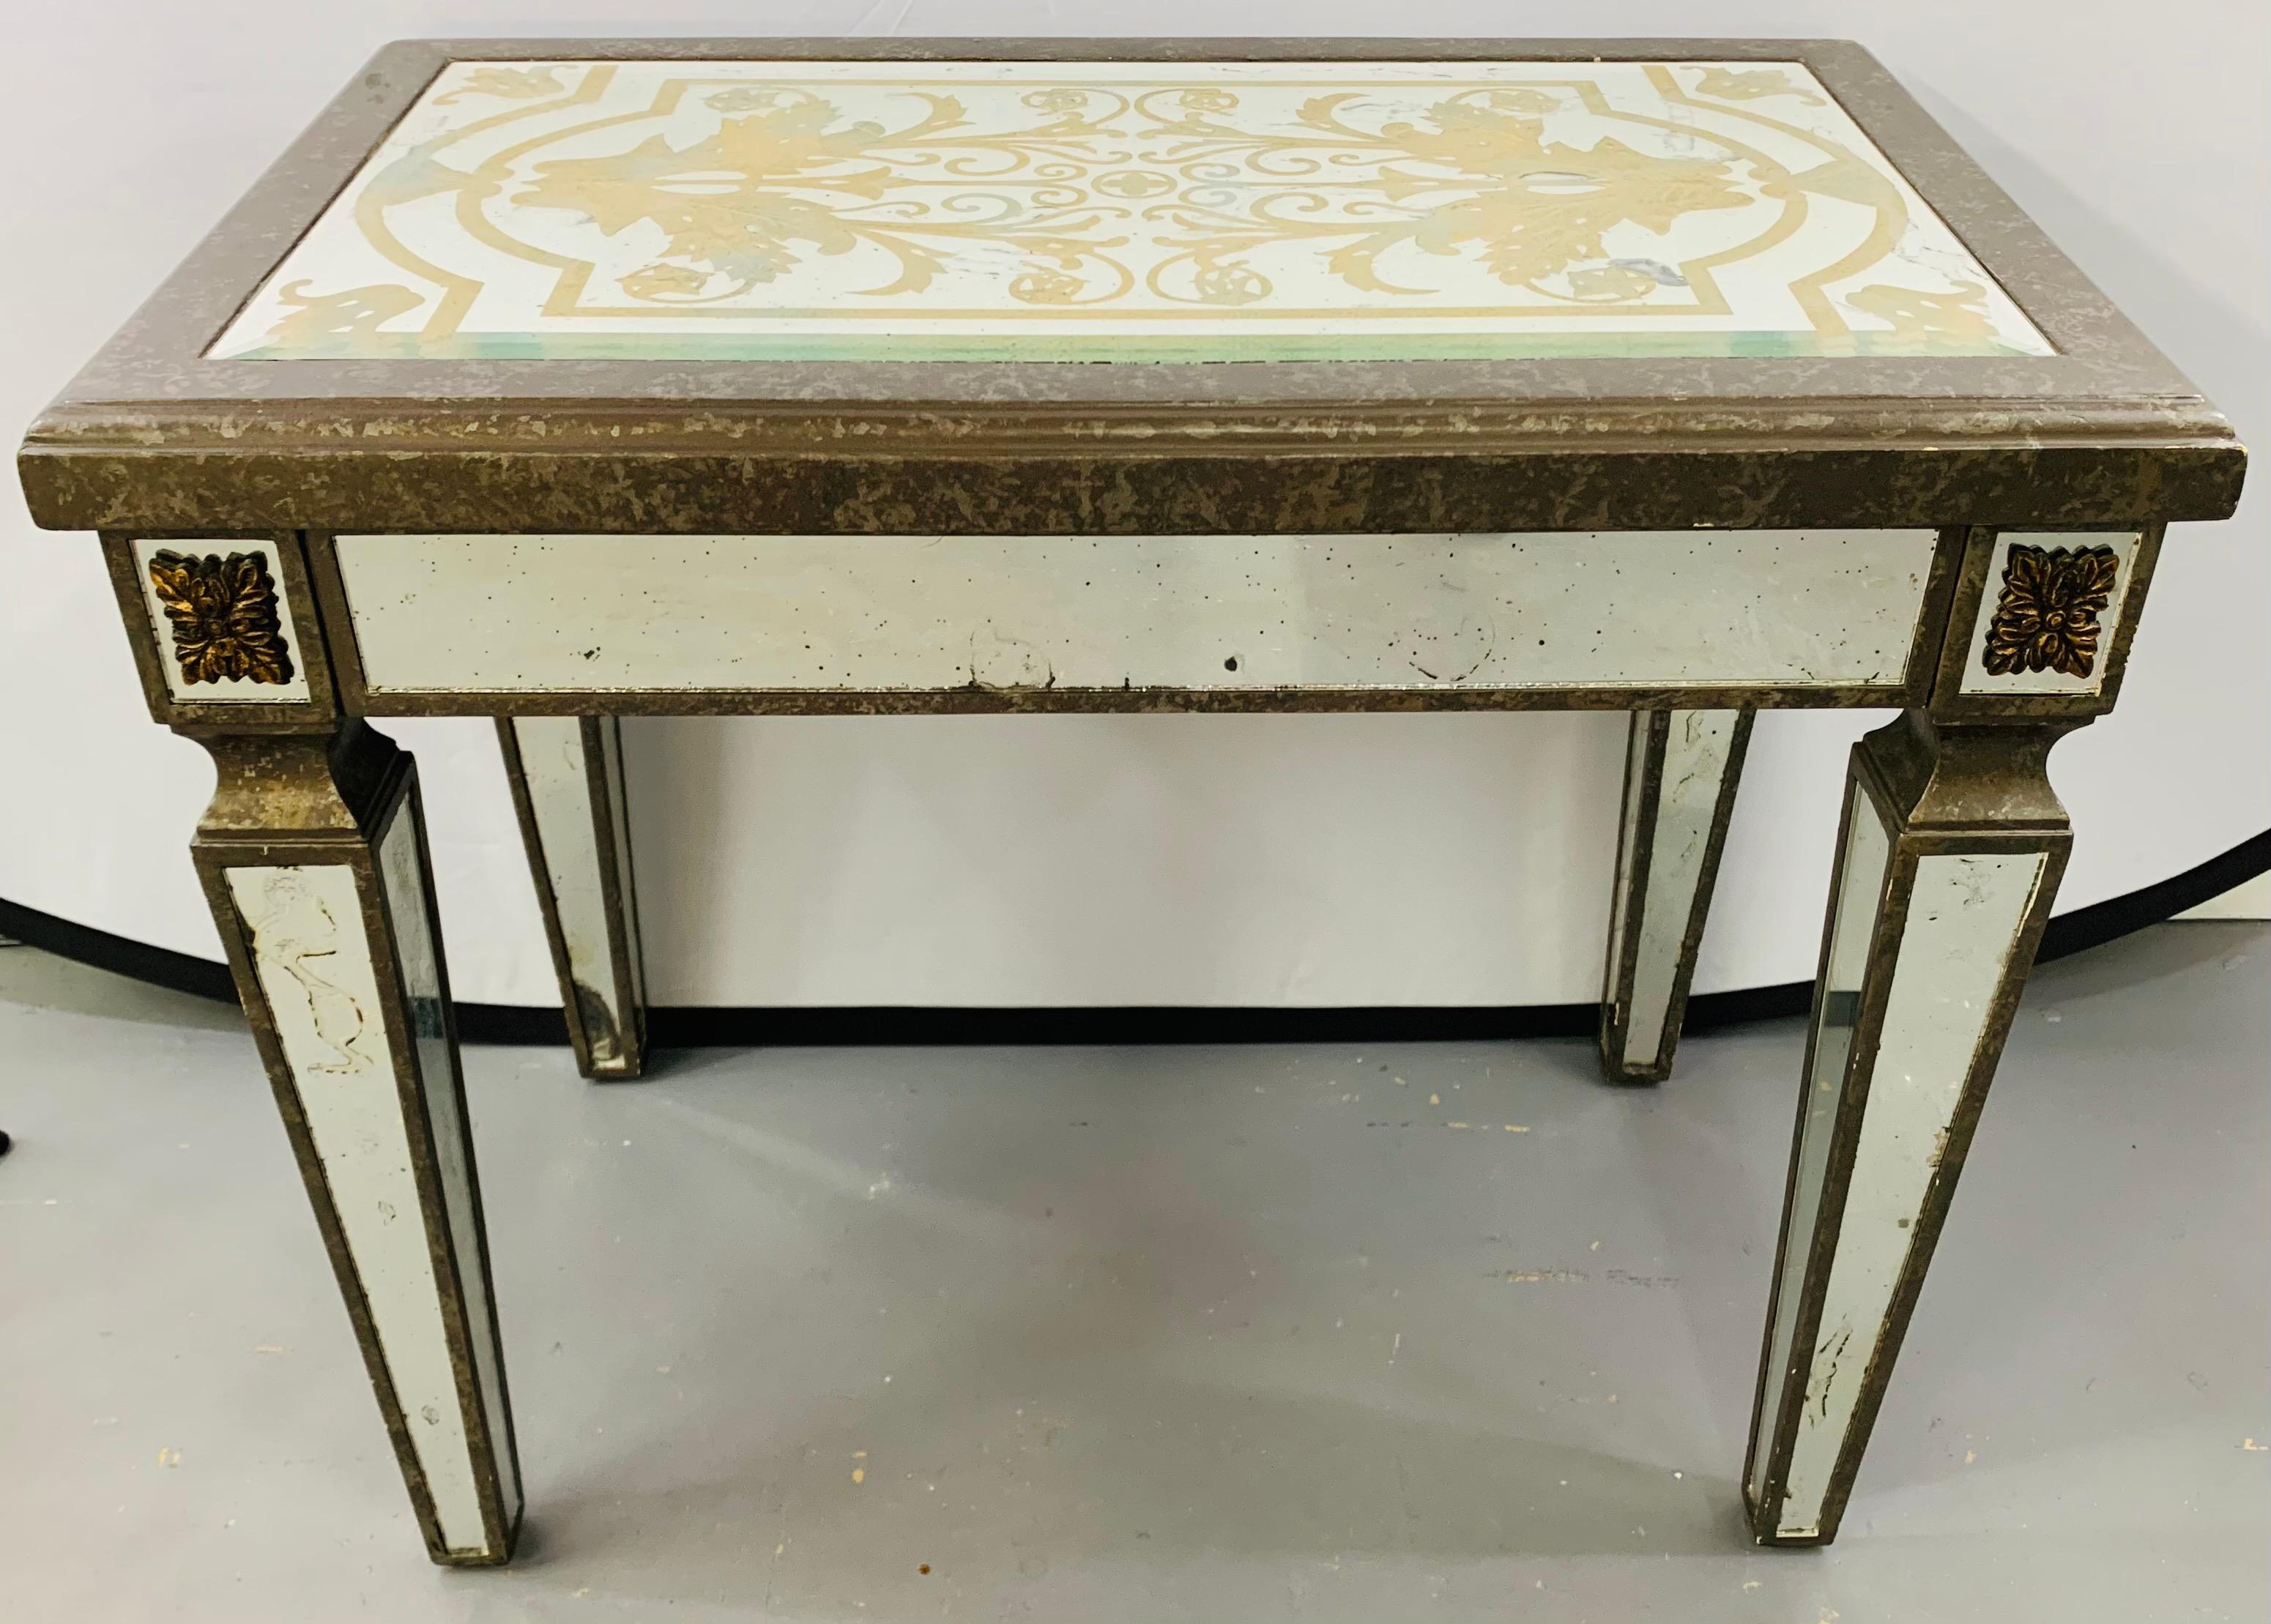 Table d'appoint en miroir églomisé de style Hollywood Regency. Le plateau de la table présente un motif de peinture jaune d'or fin avec un cadre en bois vieilli. Les pieds cannelés sont élégants et se reflètent également de manière antiquaire.

Le